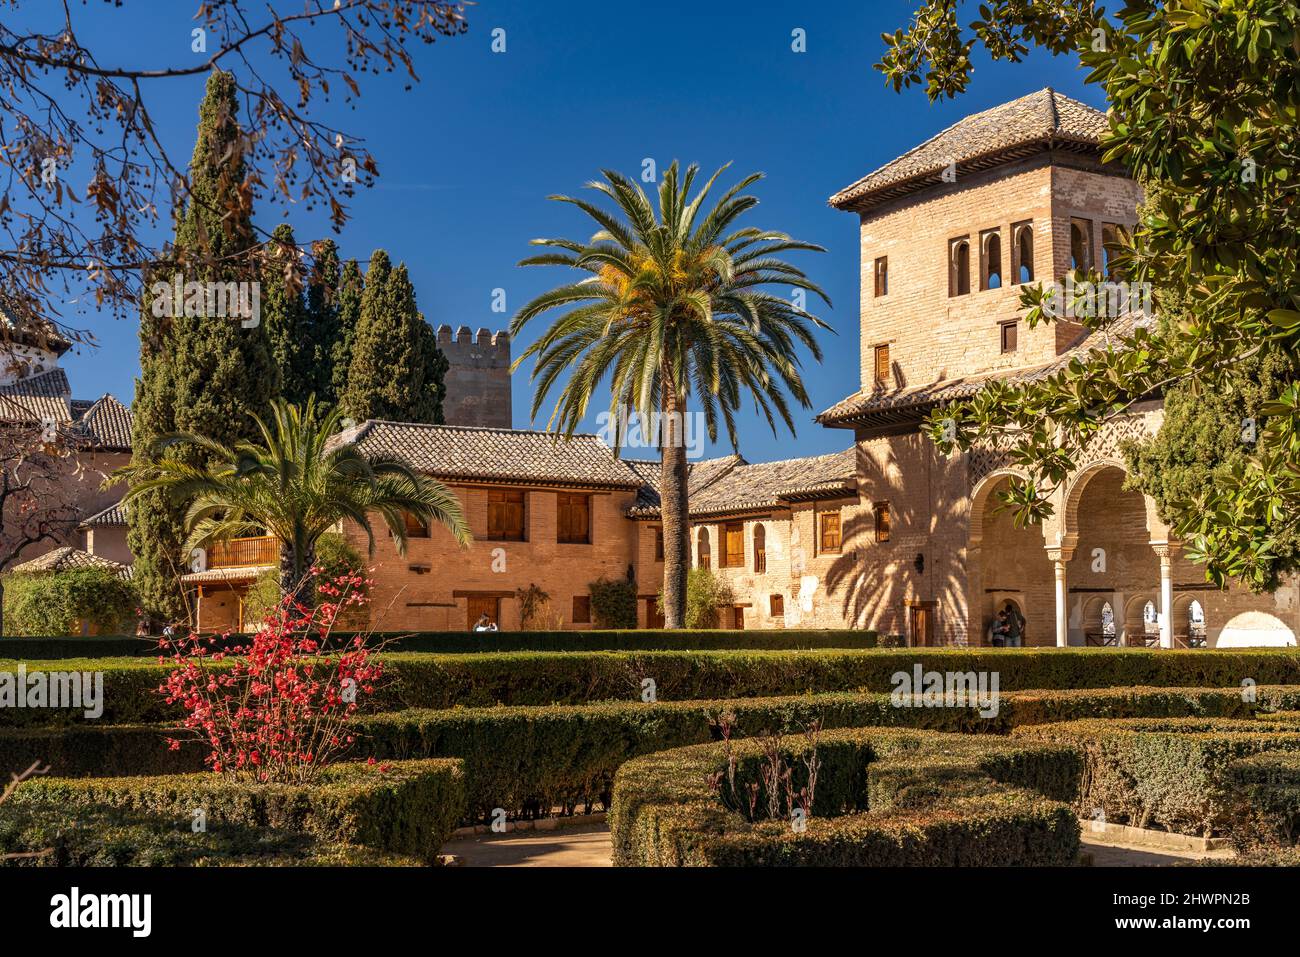 Der Partal Palast und Garten, Welterbe Alhambra a Granada, Andalusia, spagnolo | il Palazzo e i giardini del Partal, patrimonio mondiale dell'Alhambra a Granada, Foto Stock